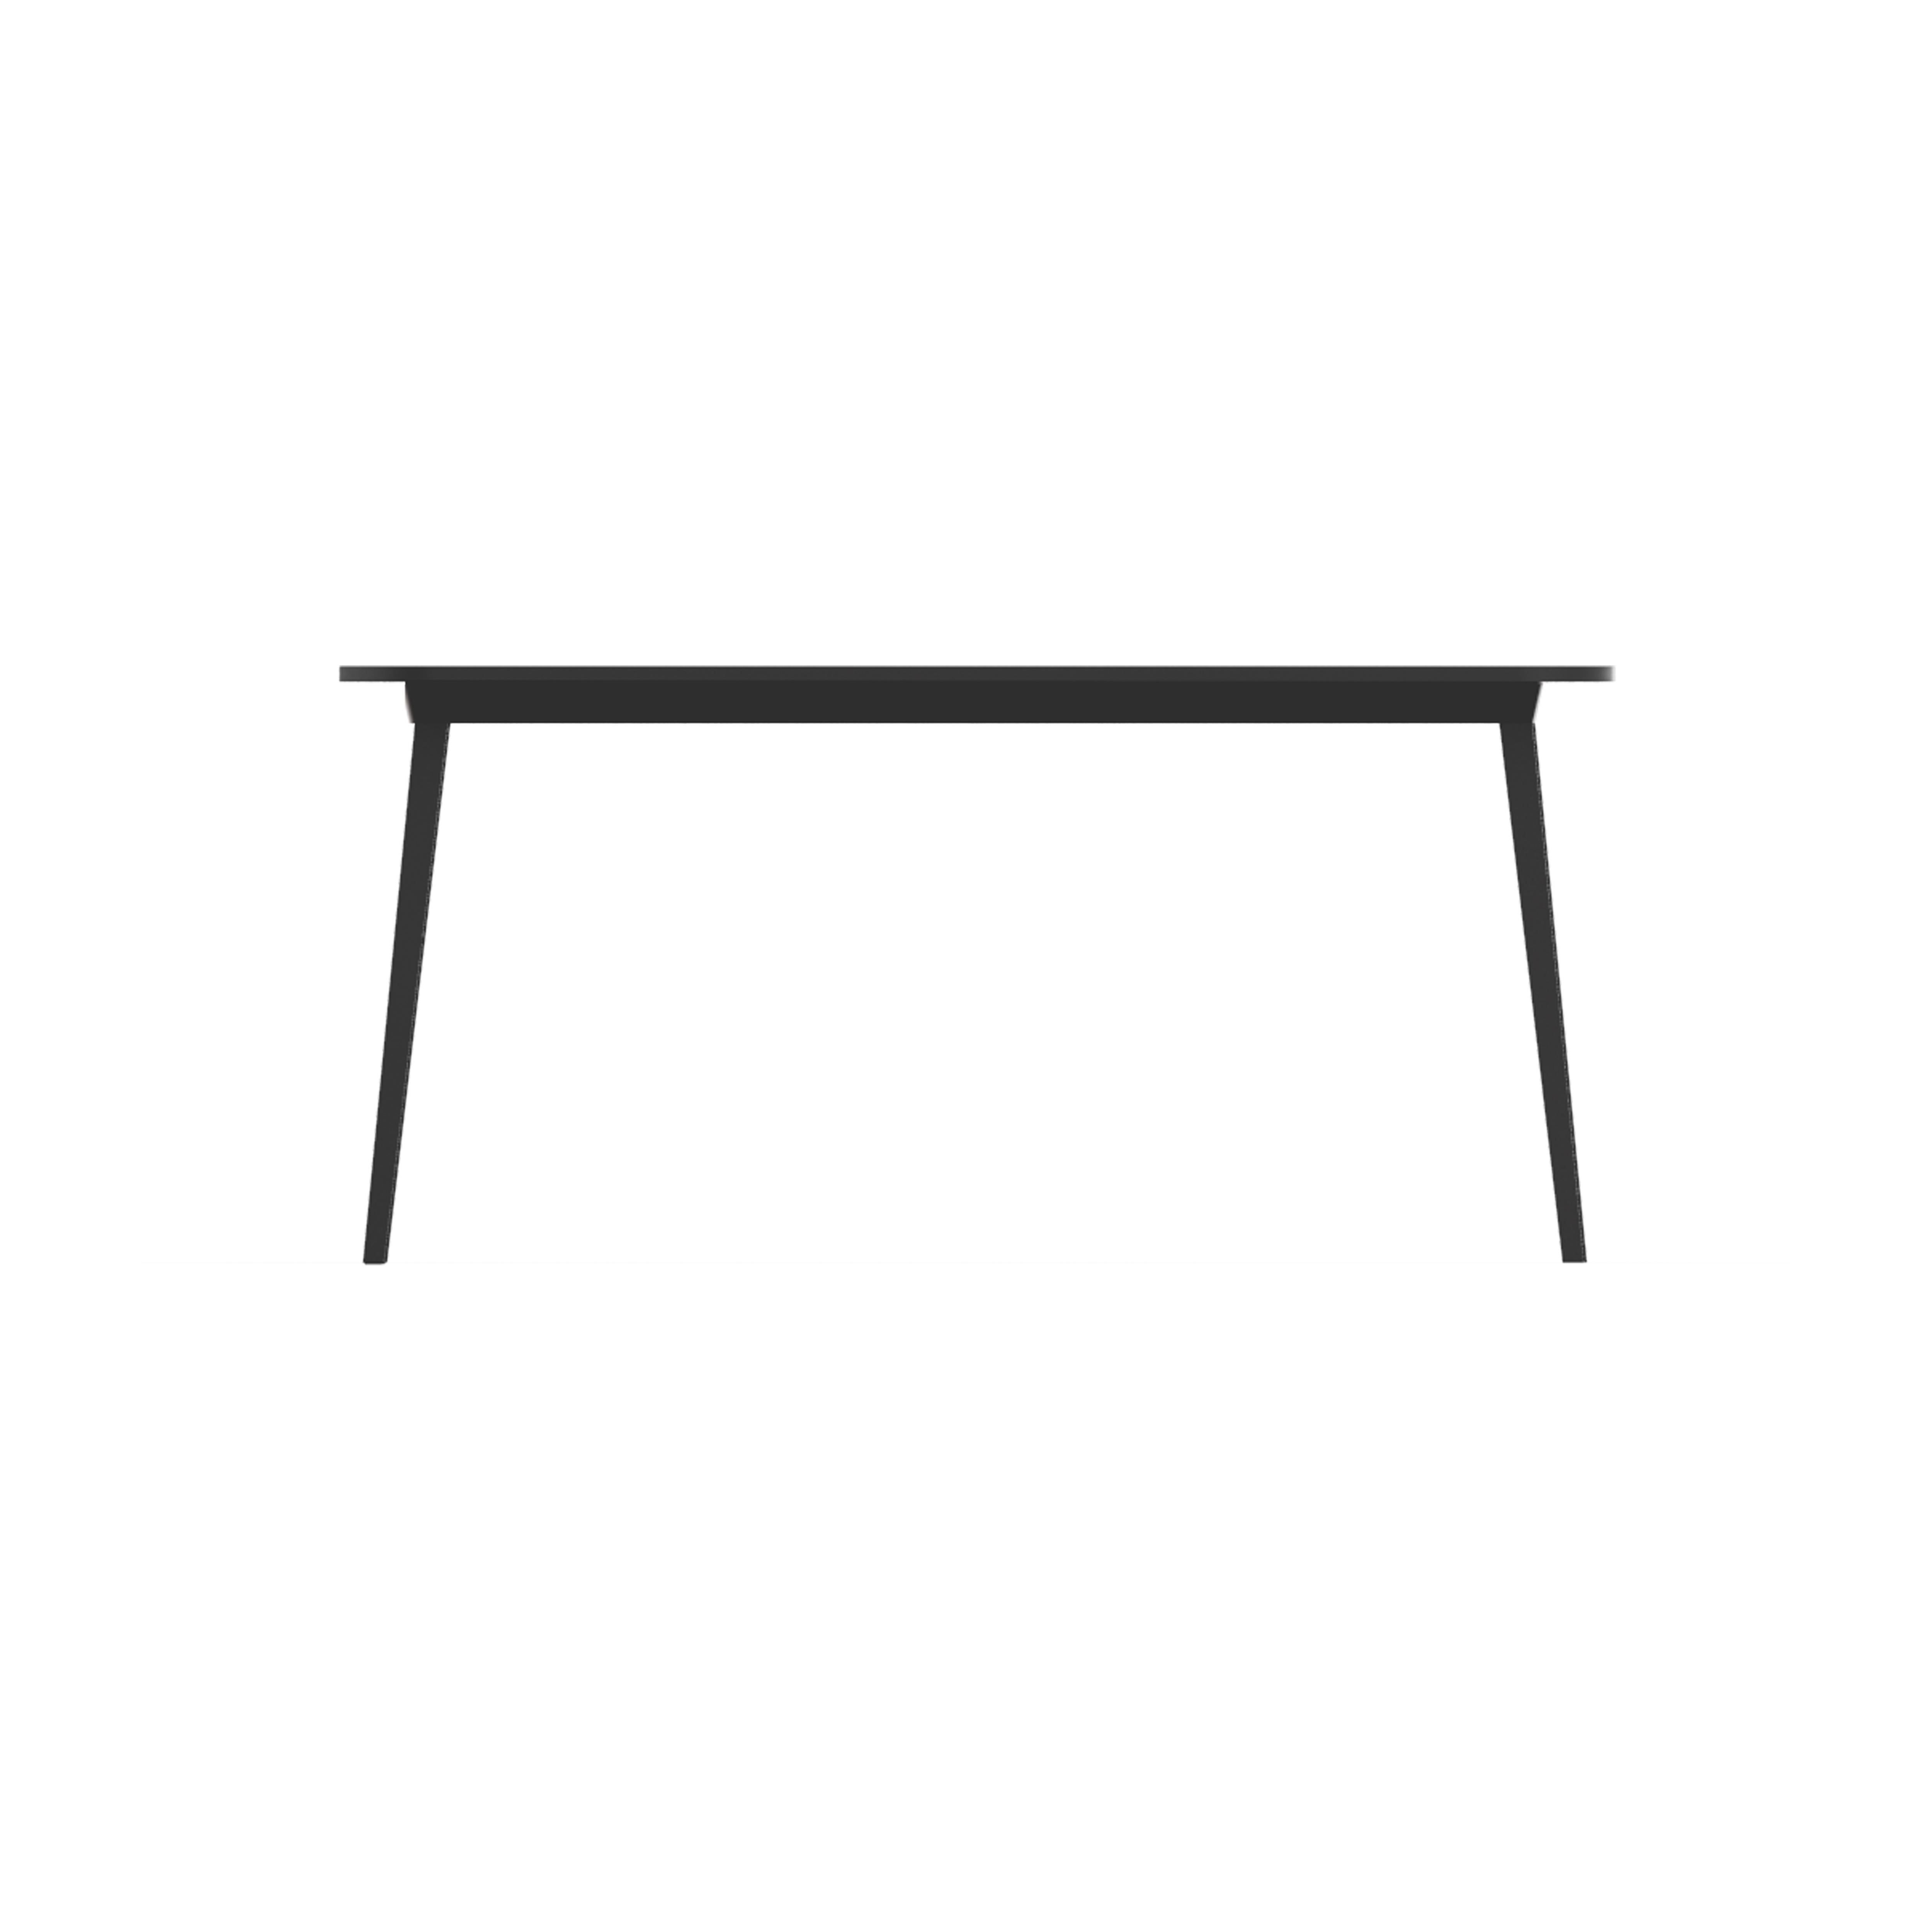 X est une famille de tables de différentes tailles, composées d'une structure extensible en aluminium avec plateau en bois ou mono-matériau en plastique noir total. La table rectangulaire à six places est conçue pour les chambres et les intérieurs